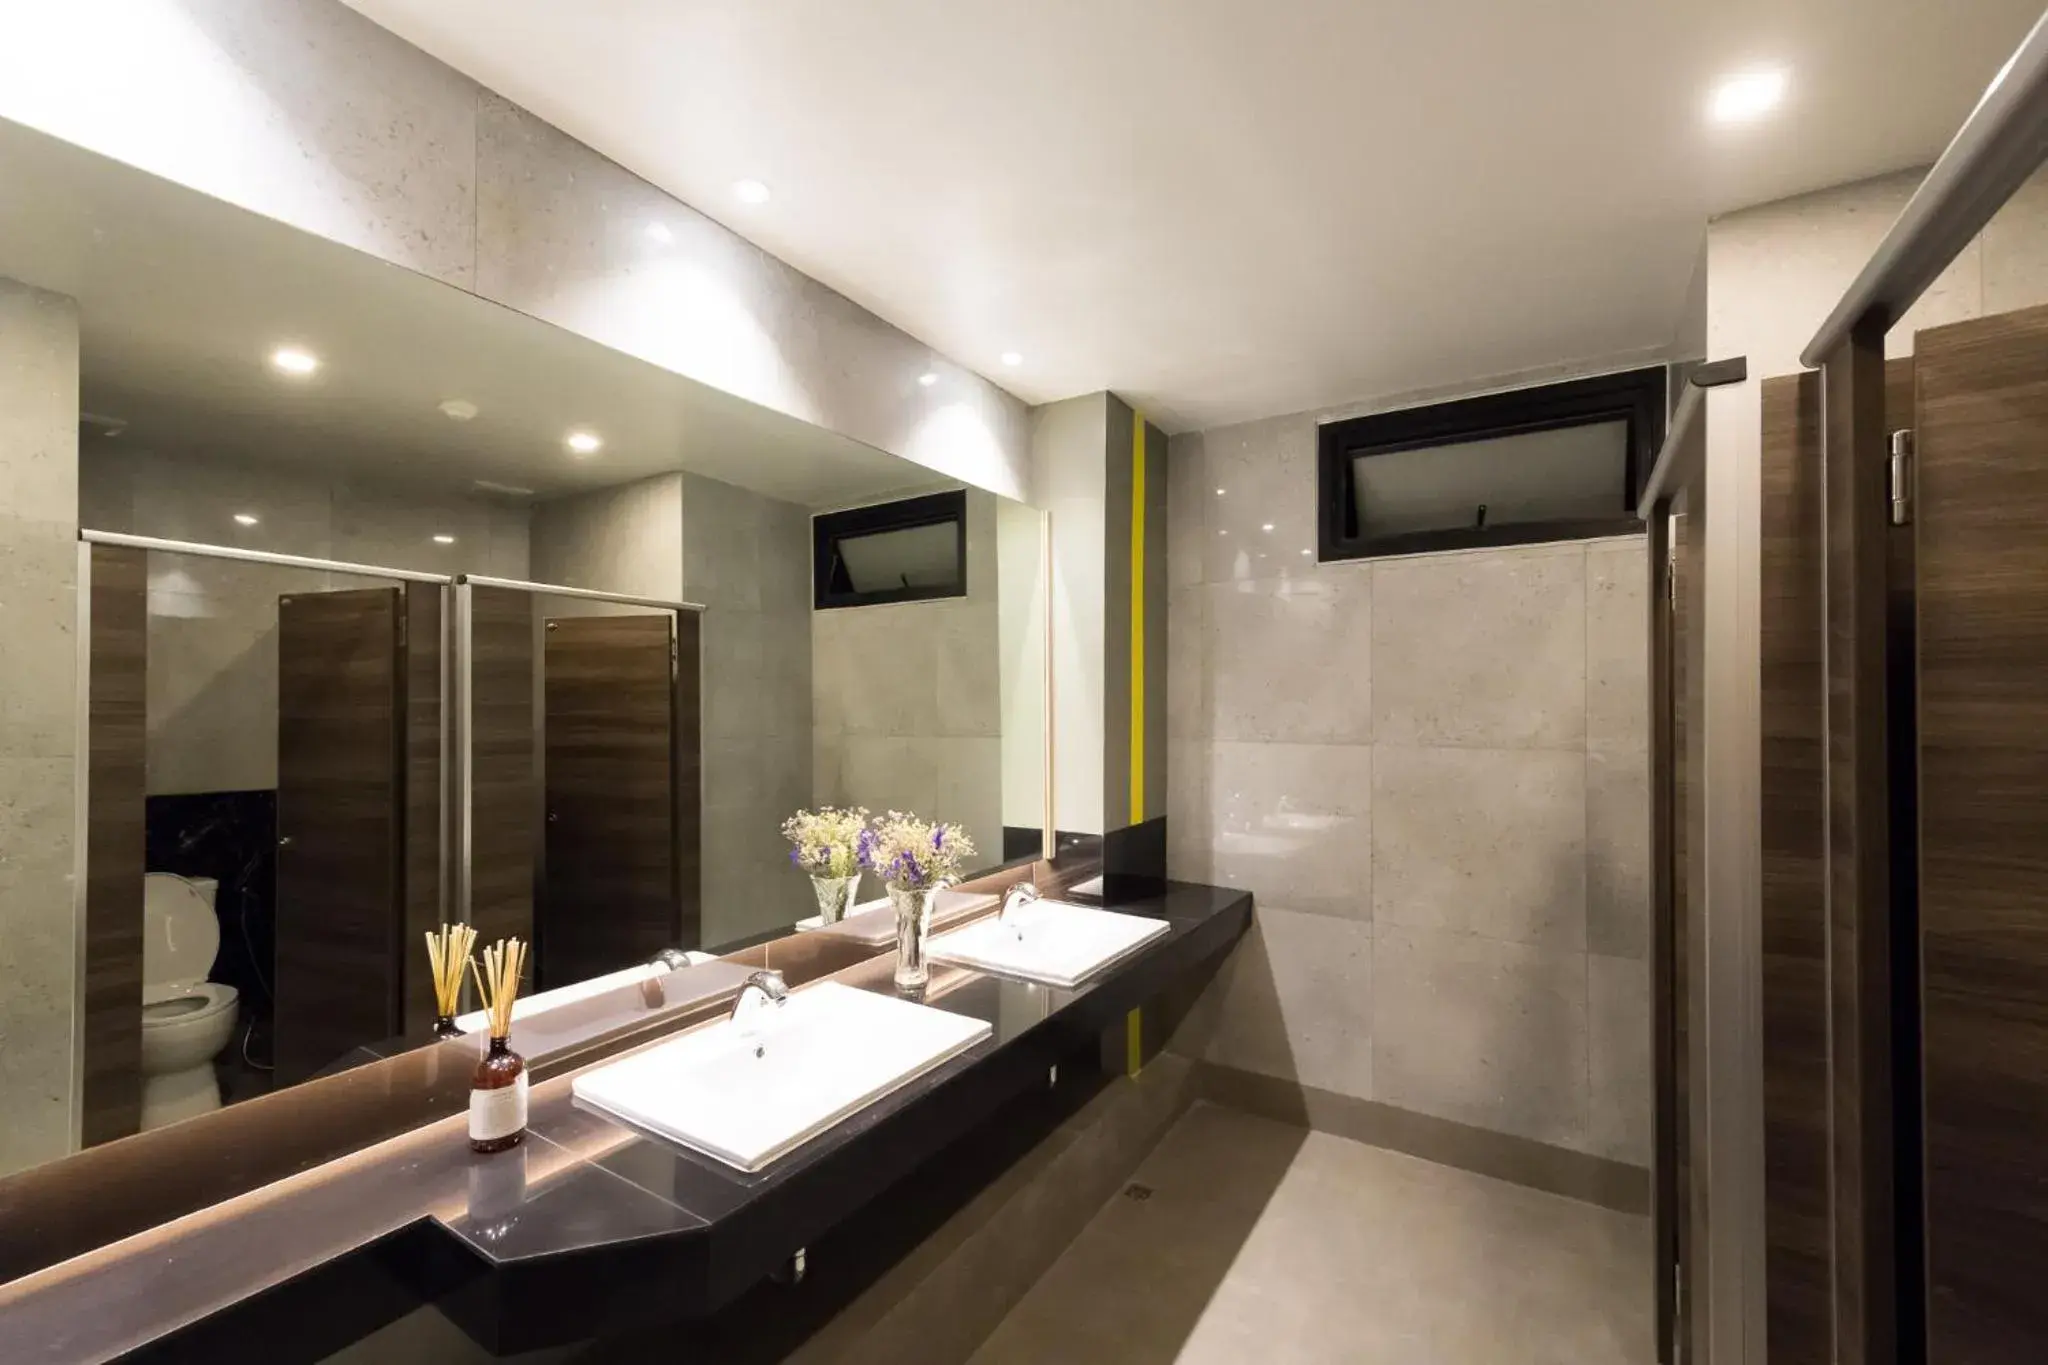 Toilet, Bathroom in Tarawish Hotel